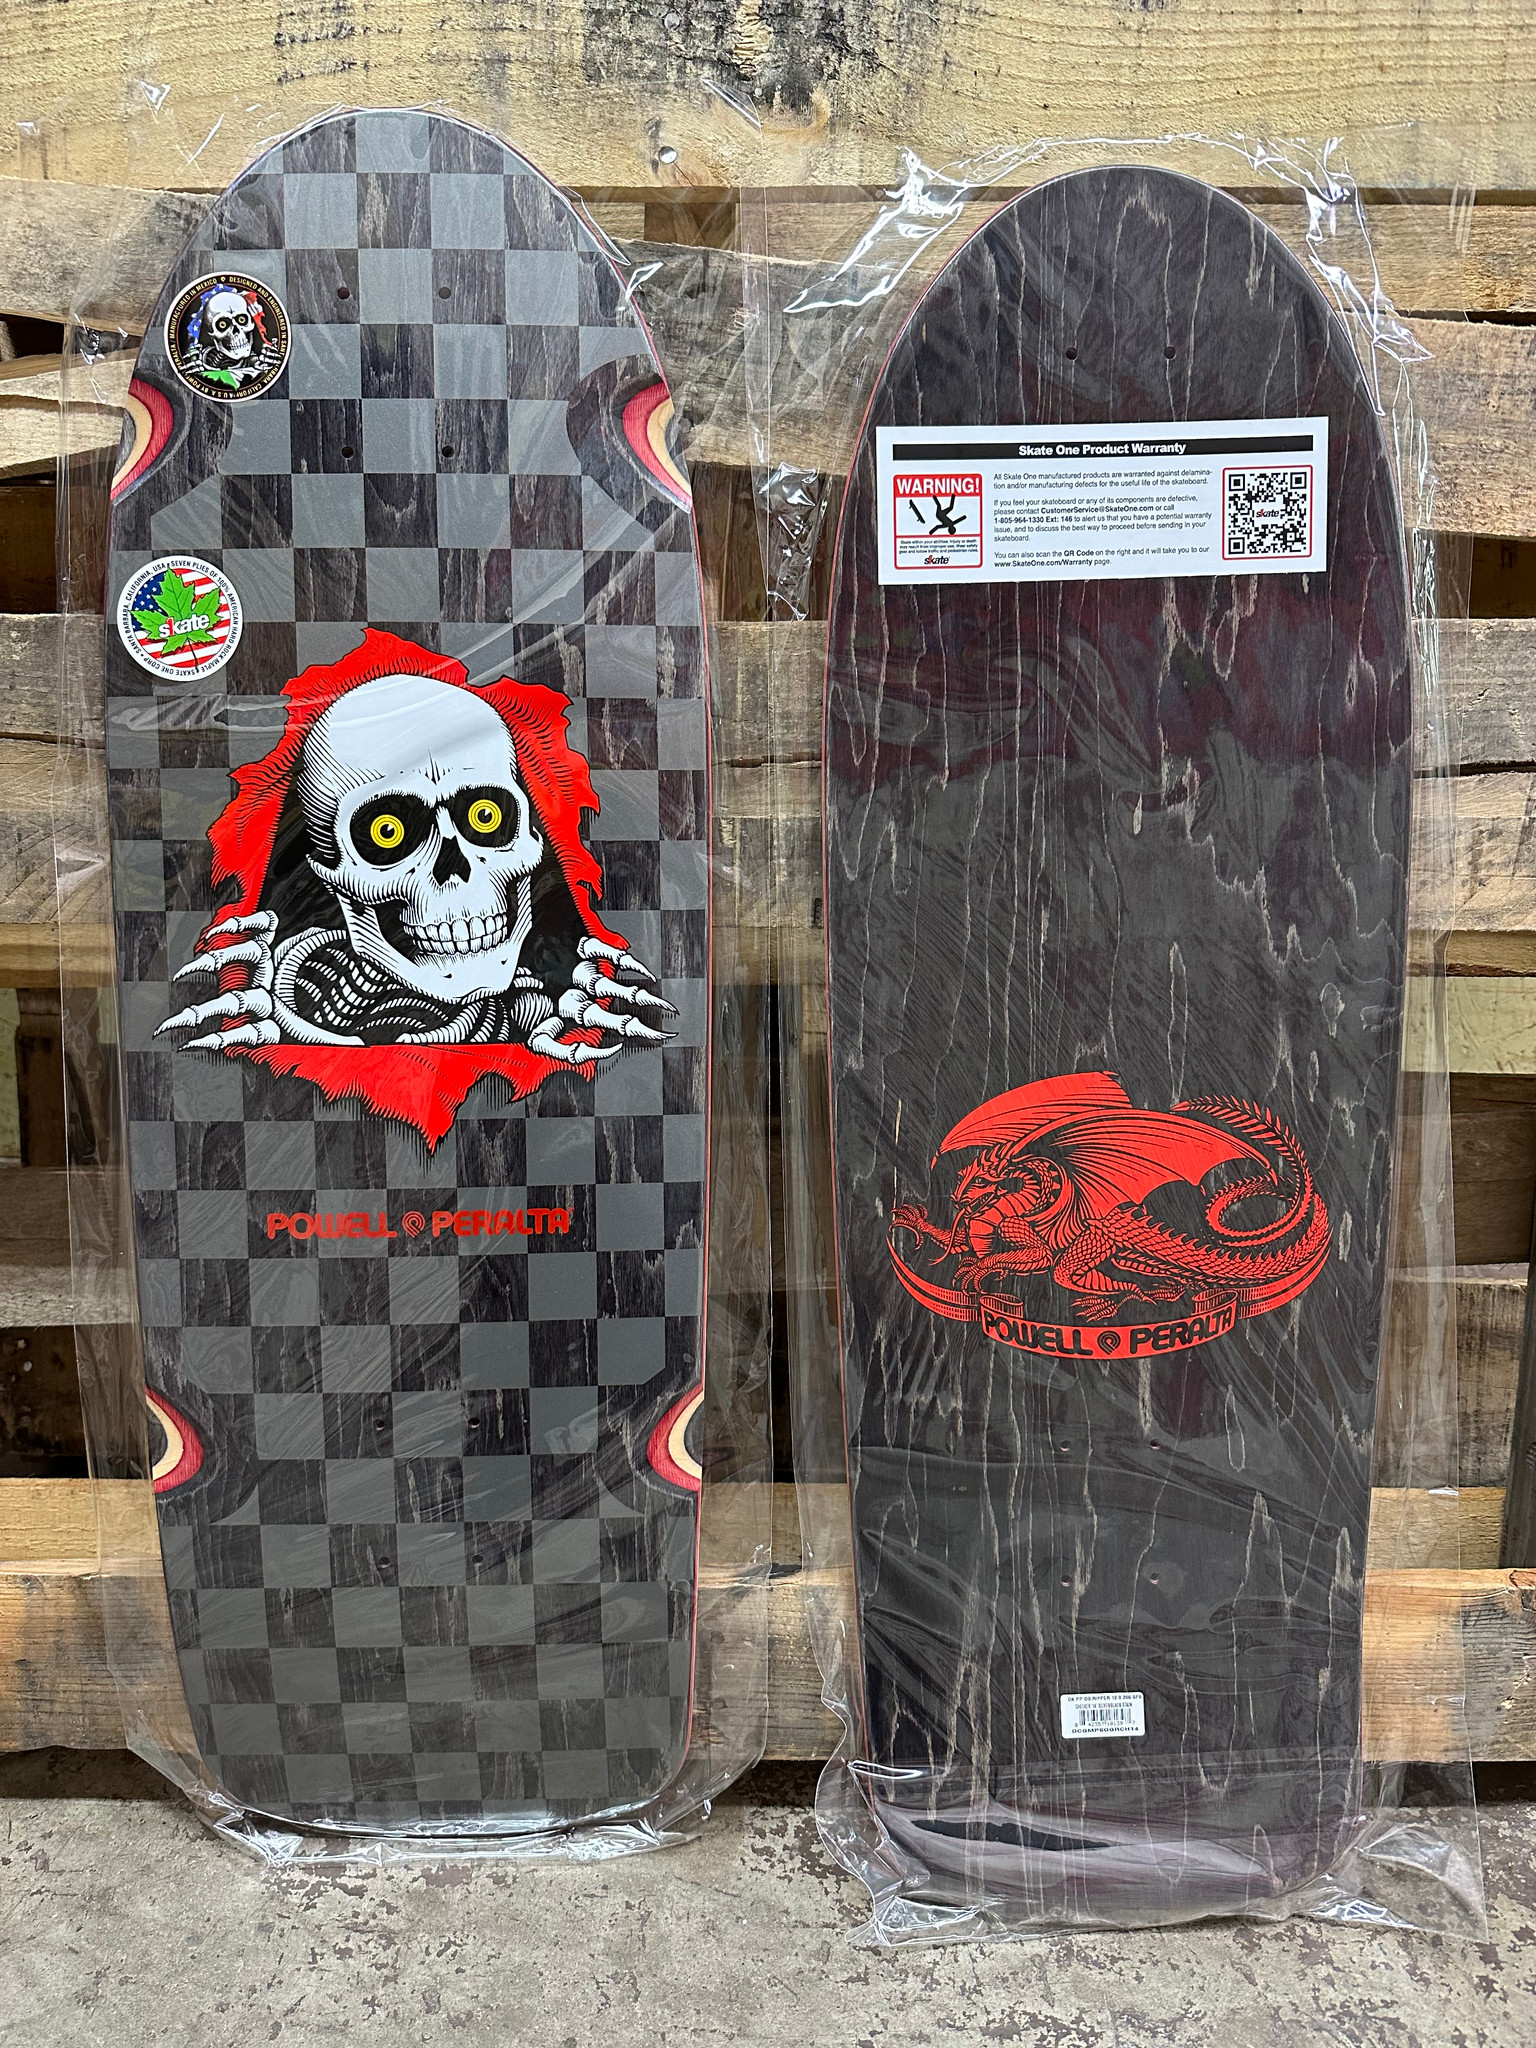 Powell Peralta OG Ripper Skateboard Deck Checker Mint- 10 x 30 